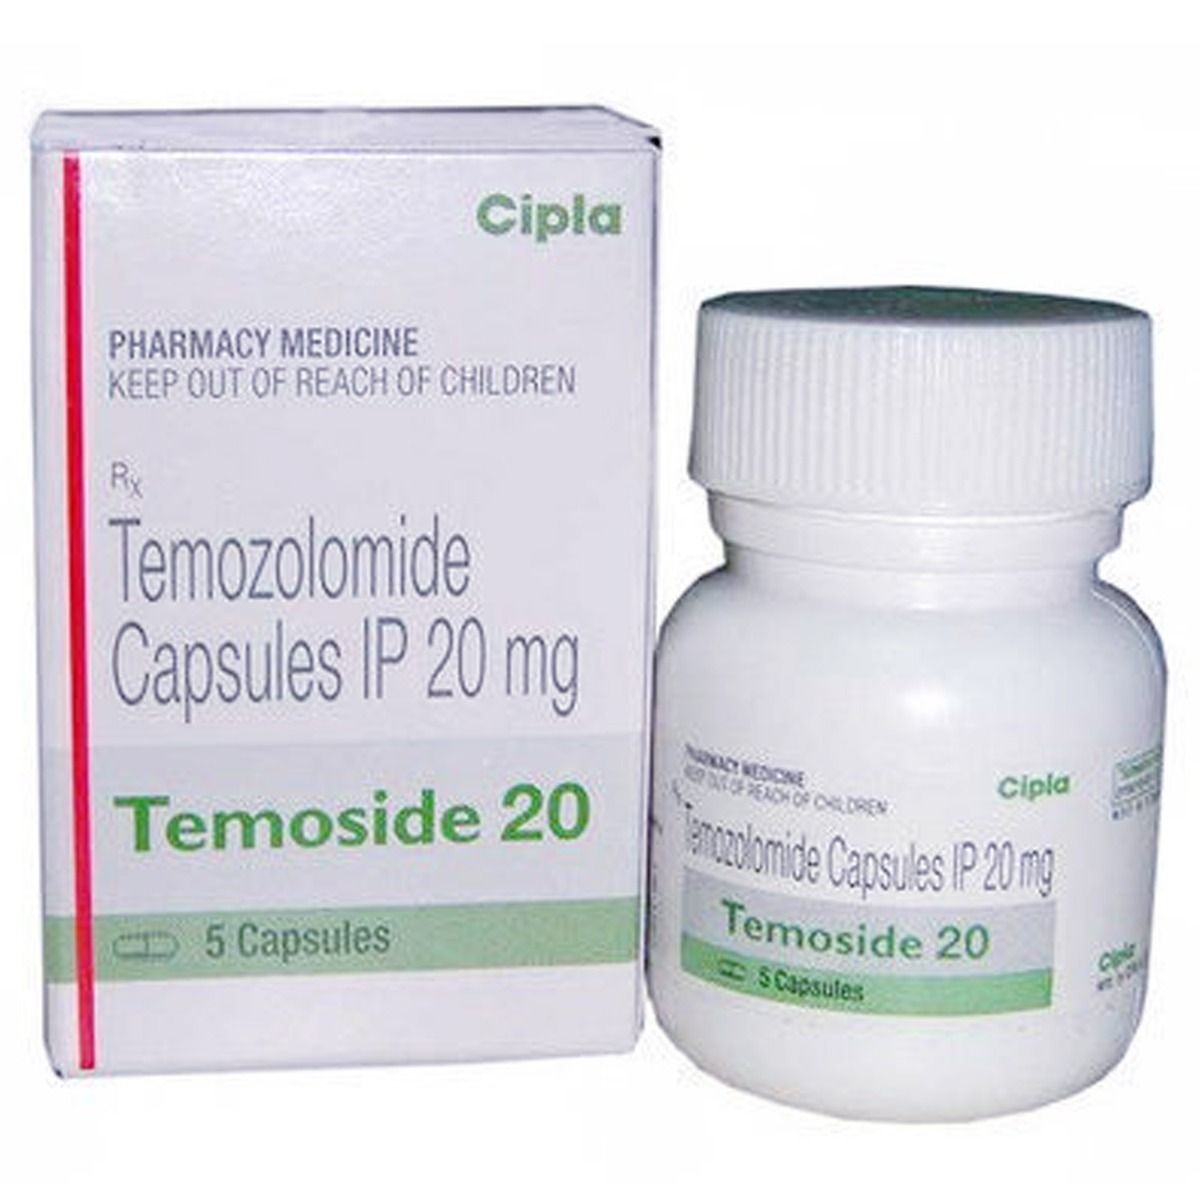 Buy Temoside 20 Capsule 5's Online